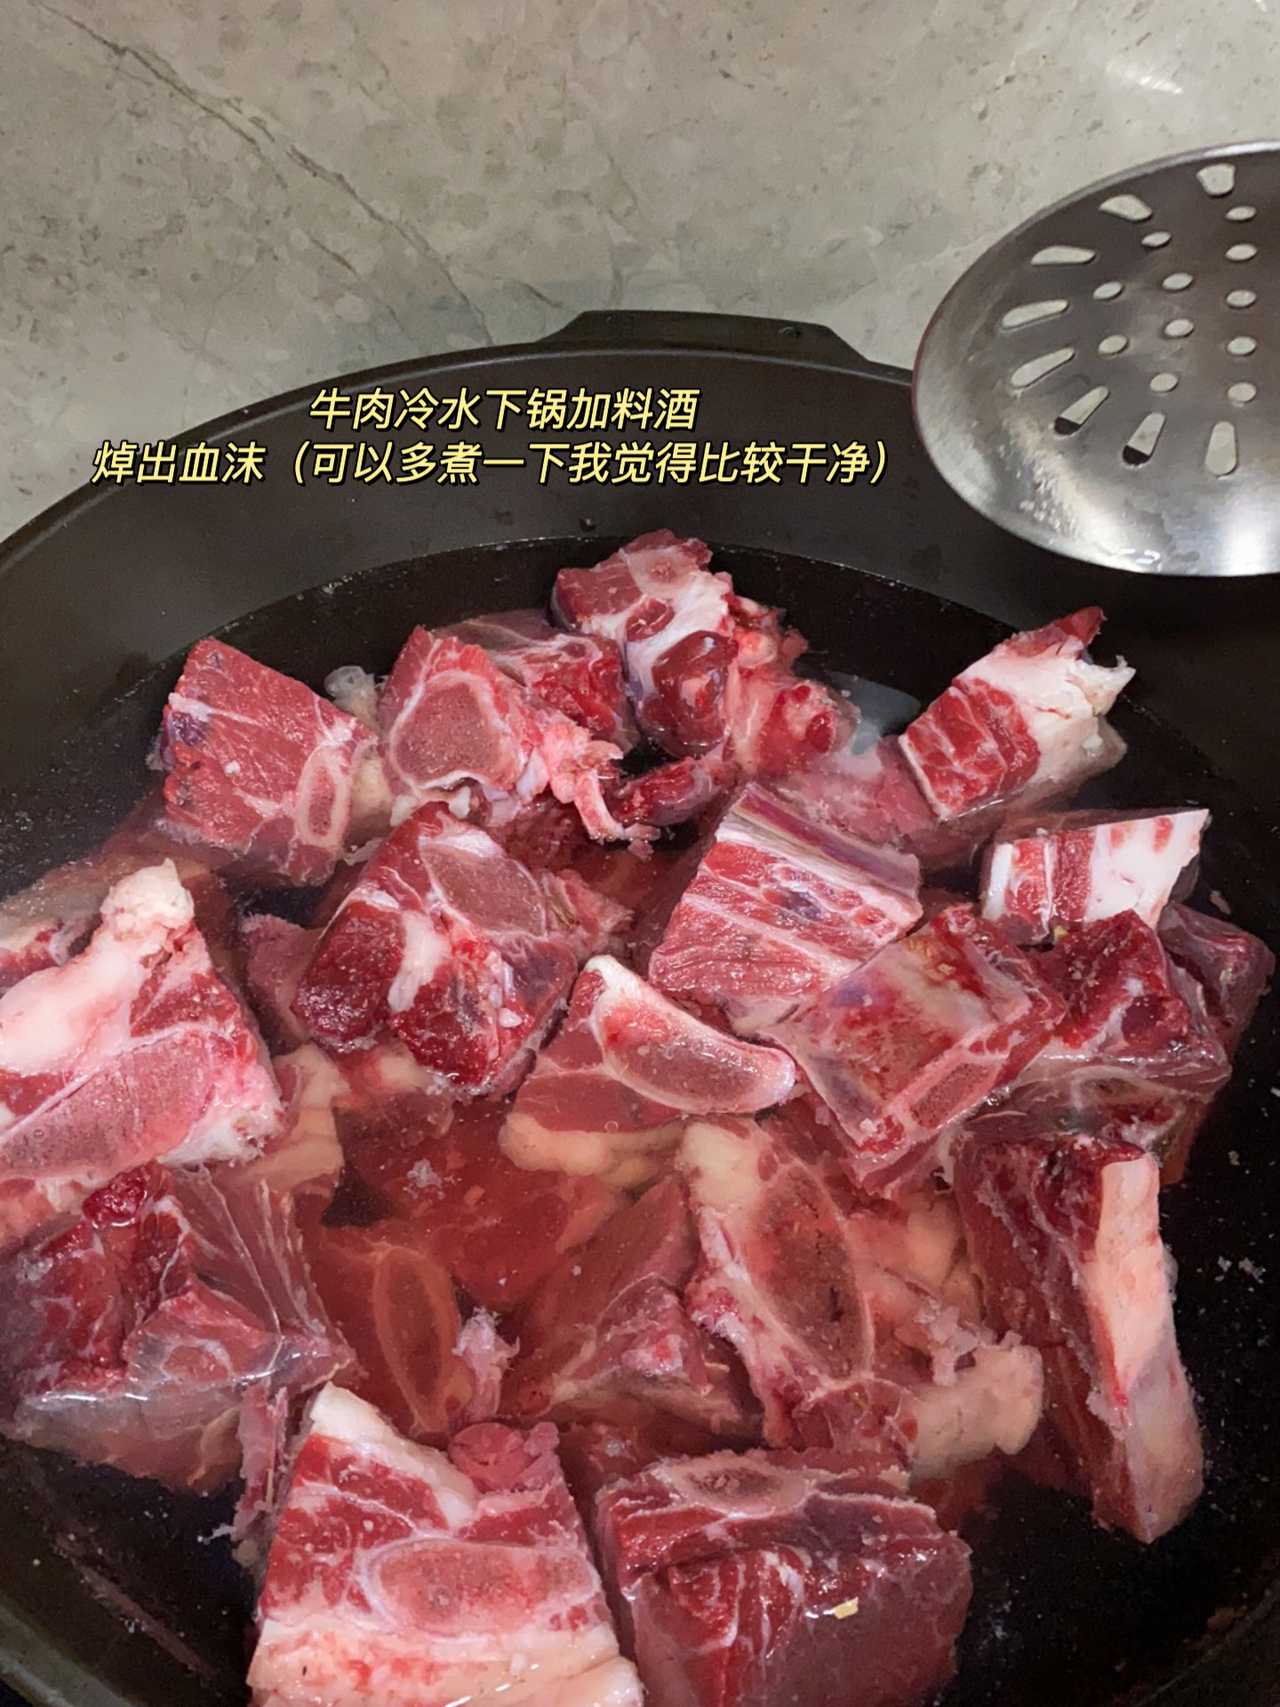 上海凯士比泵有限公司,家庭版红烧牛排